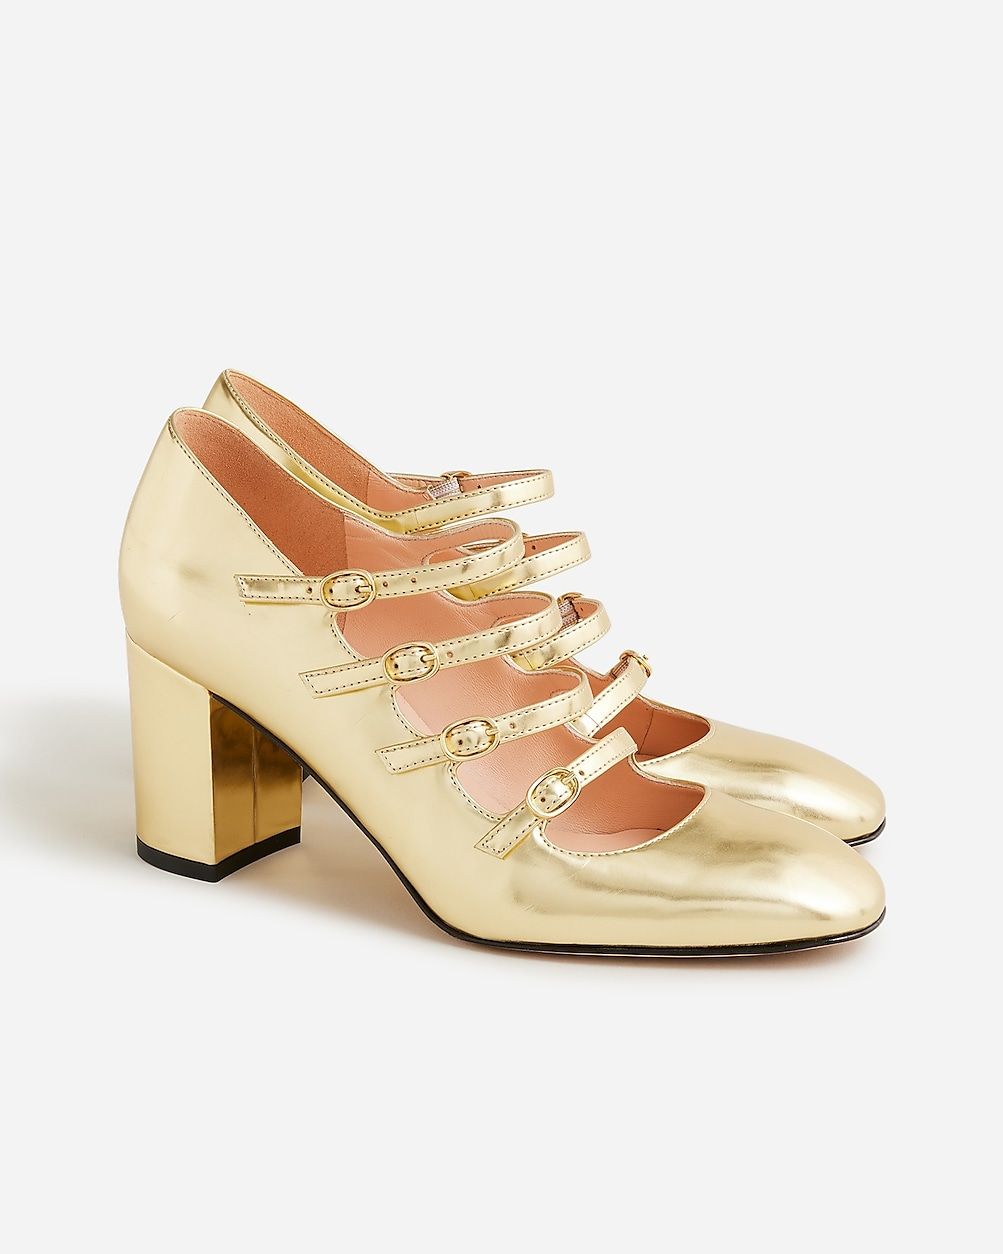 Maisie multistrap heels in metallic | J.Crew US